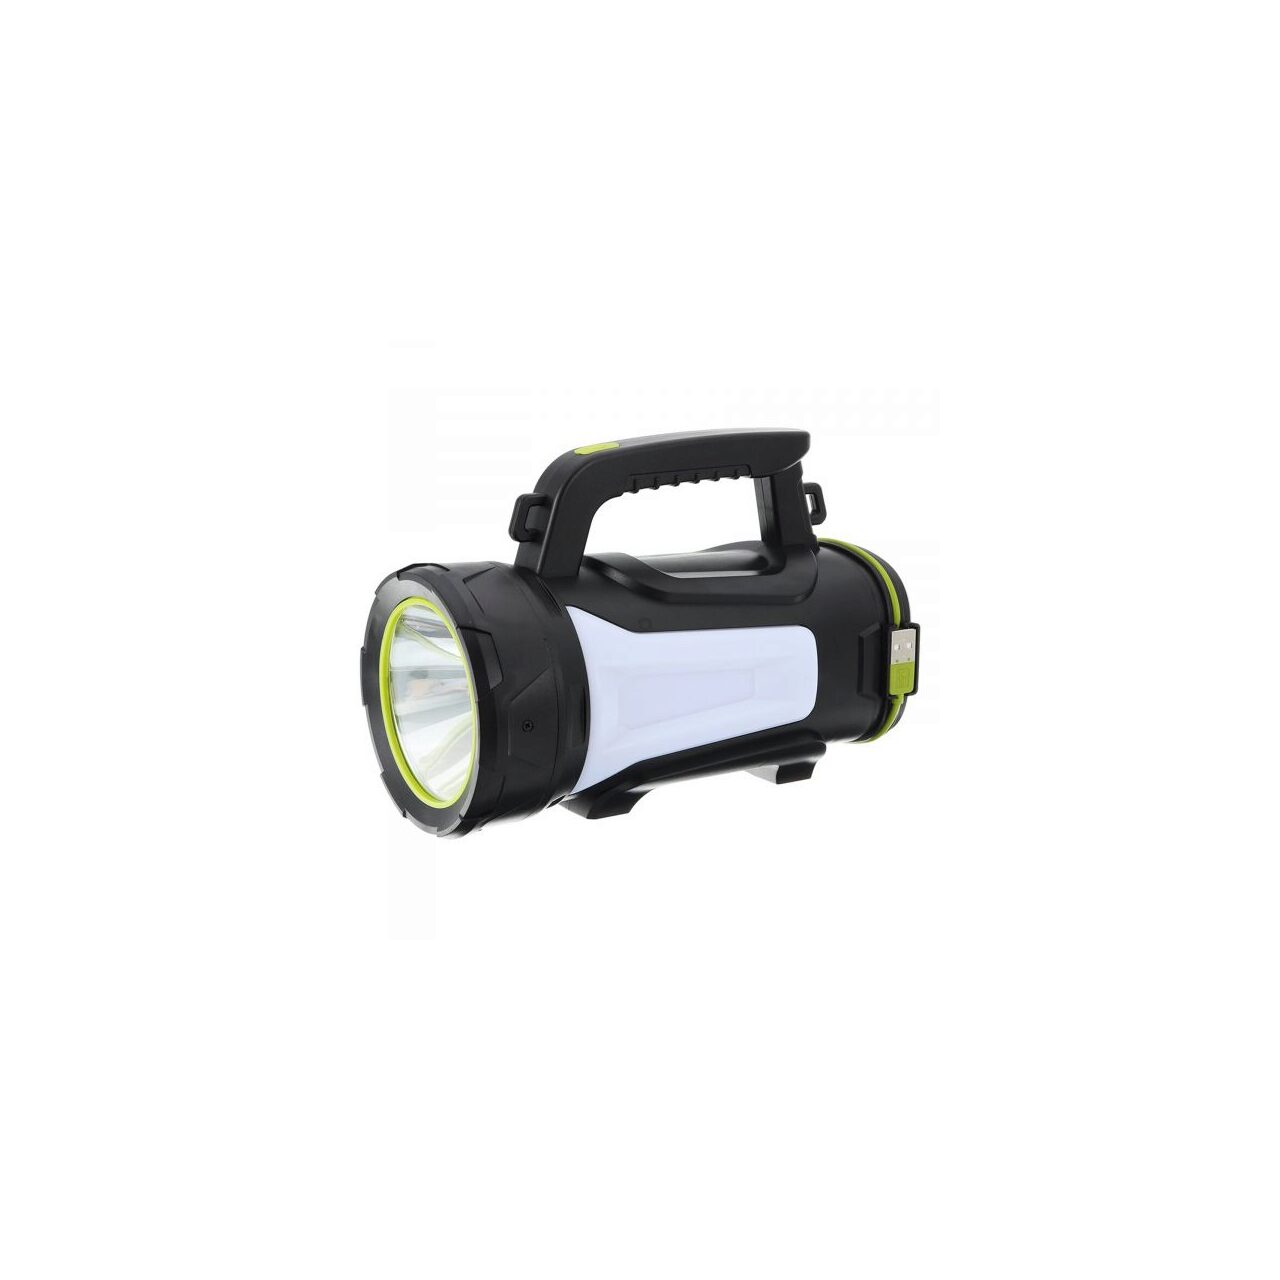 Lanterna cu acumulator litiu L18650x3 PVC led 800lm include acumulator litiu + inc.220V + cablu micro USB FL-PN-160 TED003881